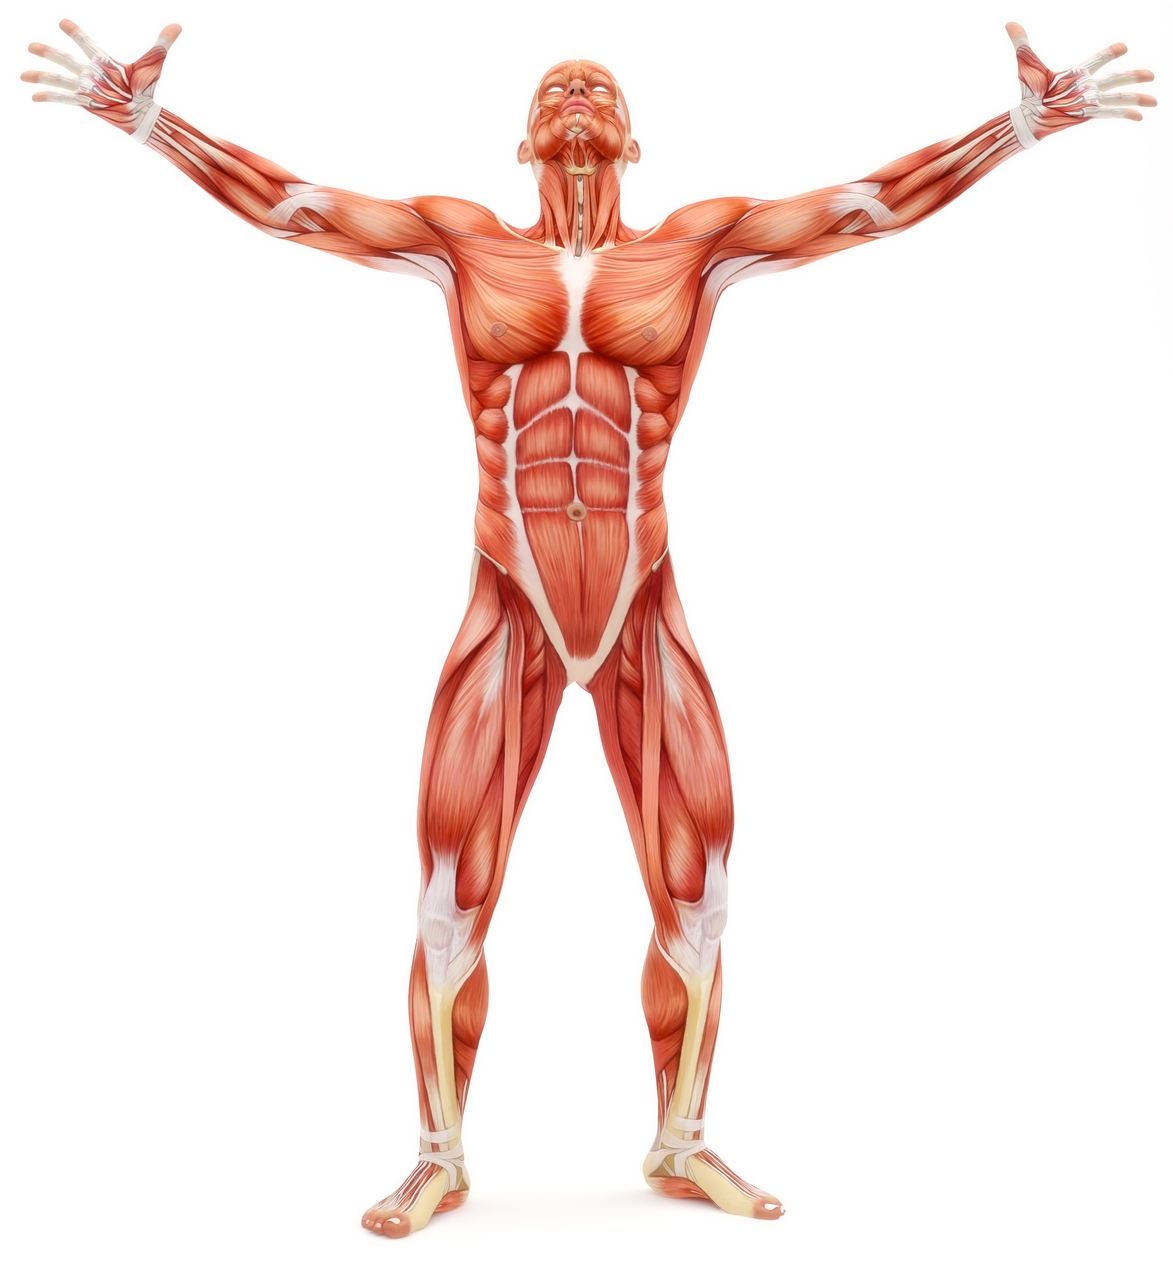 Kunstlikud lihased: inimkeha on jätkuvalt tehislihaste kullastandard